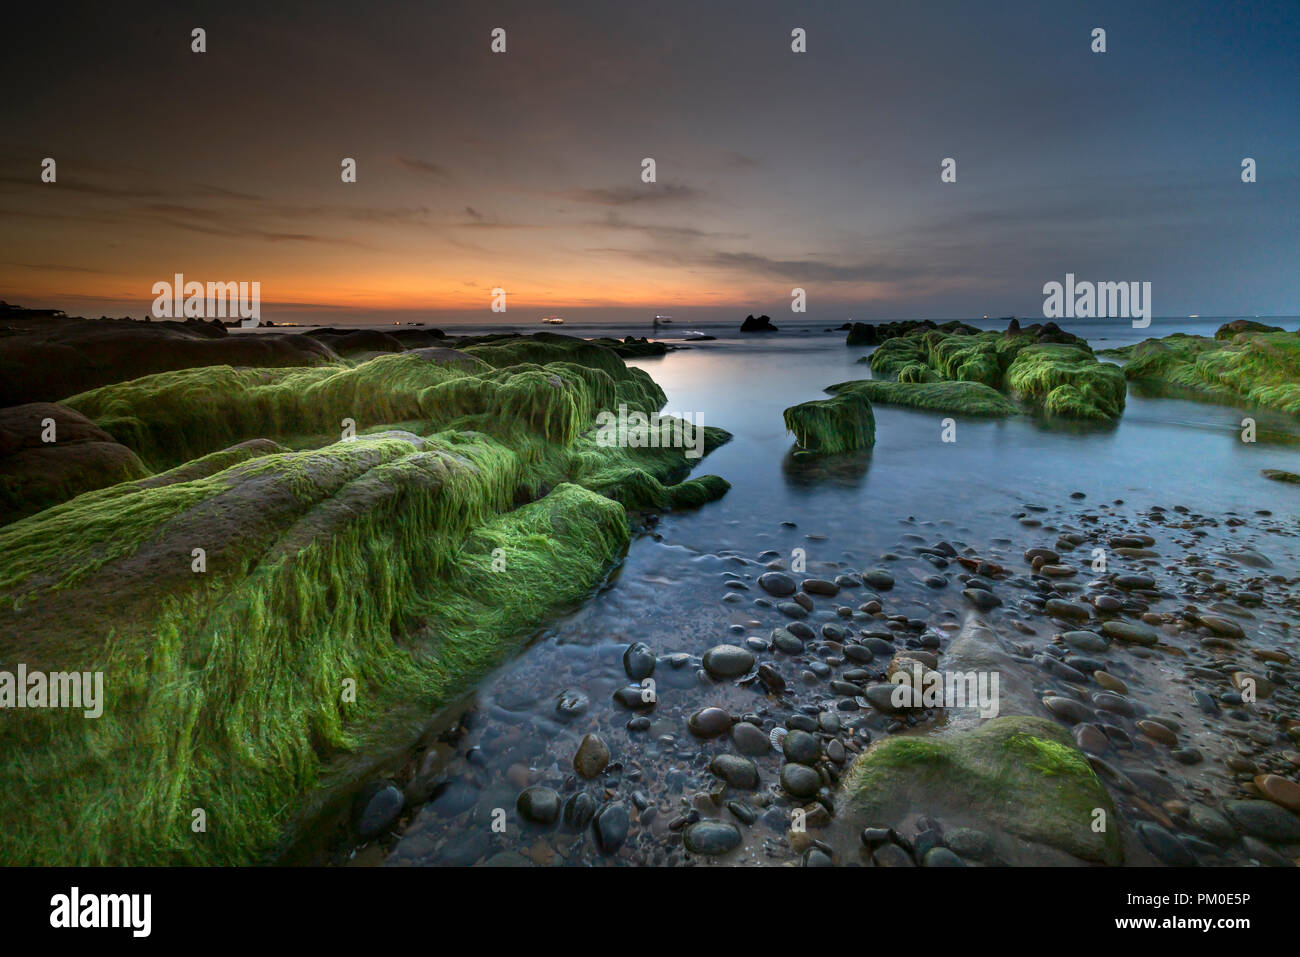 Le pietre in Co Thach costa erano completamente coperte di muschio e alghe. Foto Stock